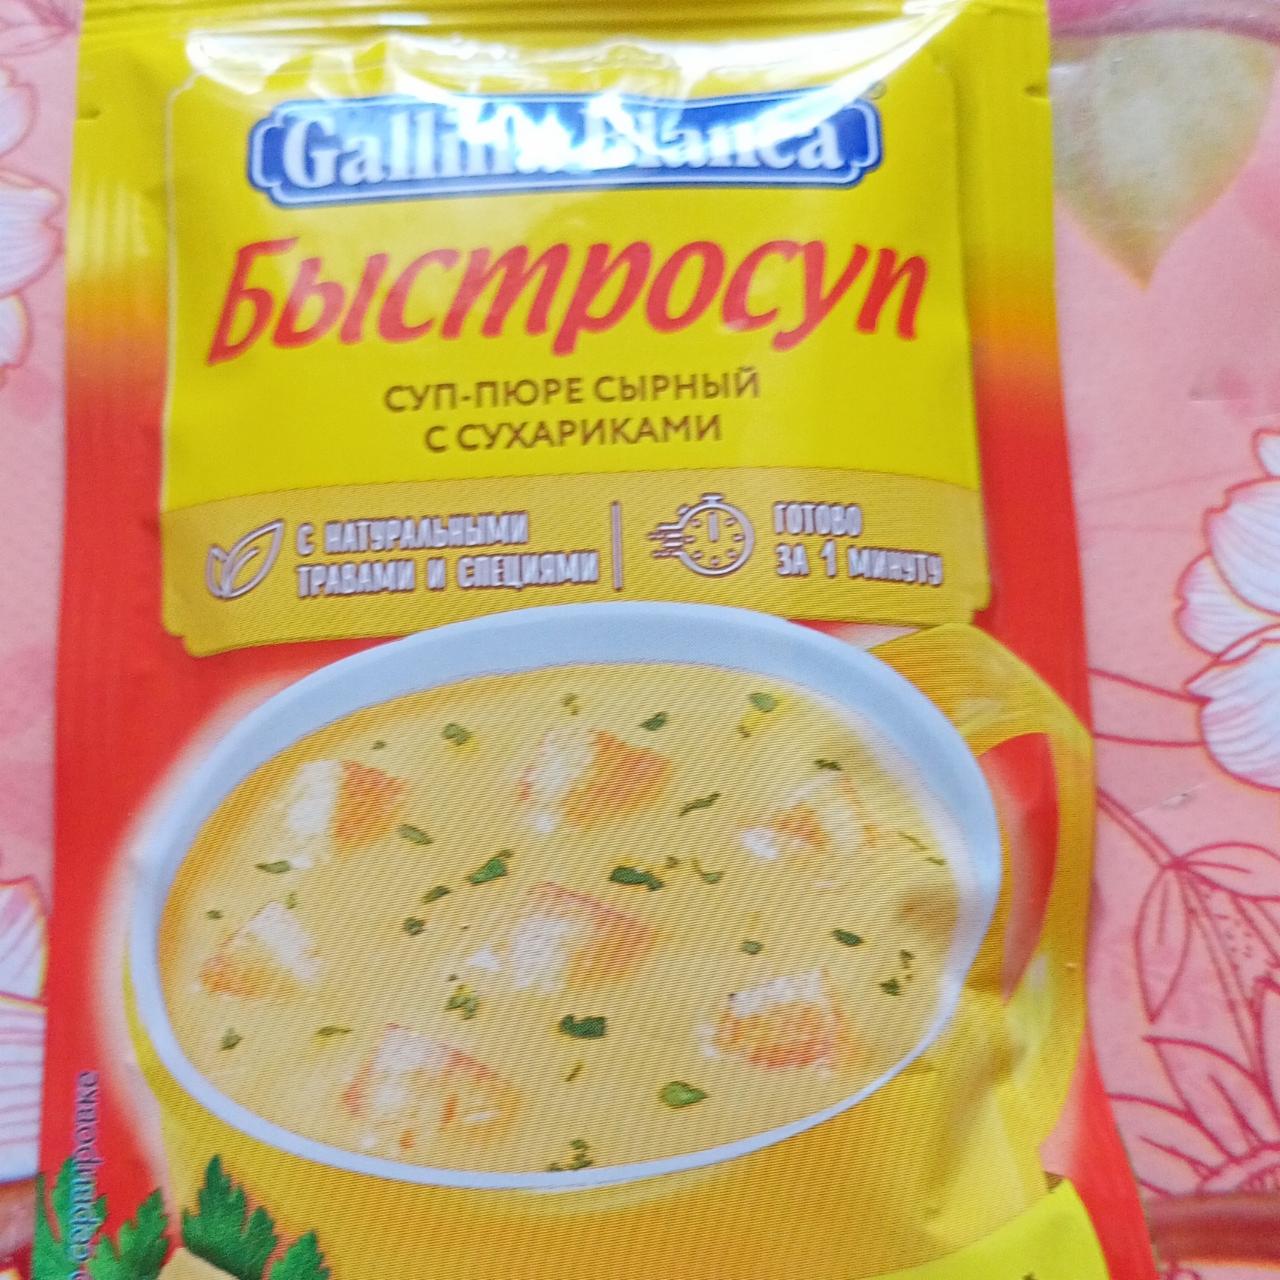 Фото - Сырный суп с сухариками быстросуп Gallina Blanca